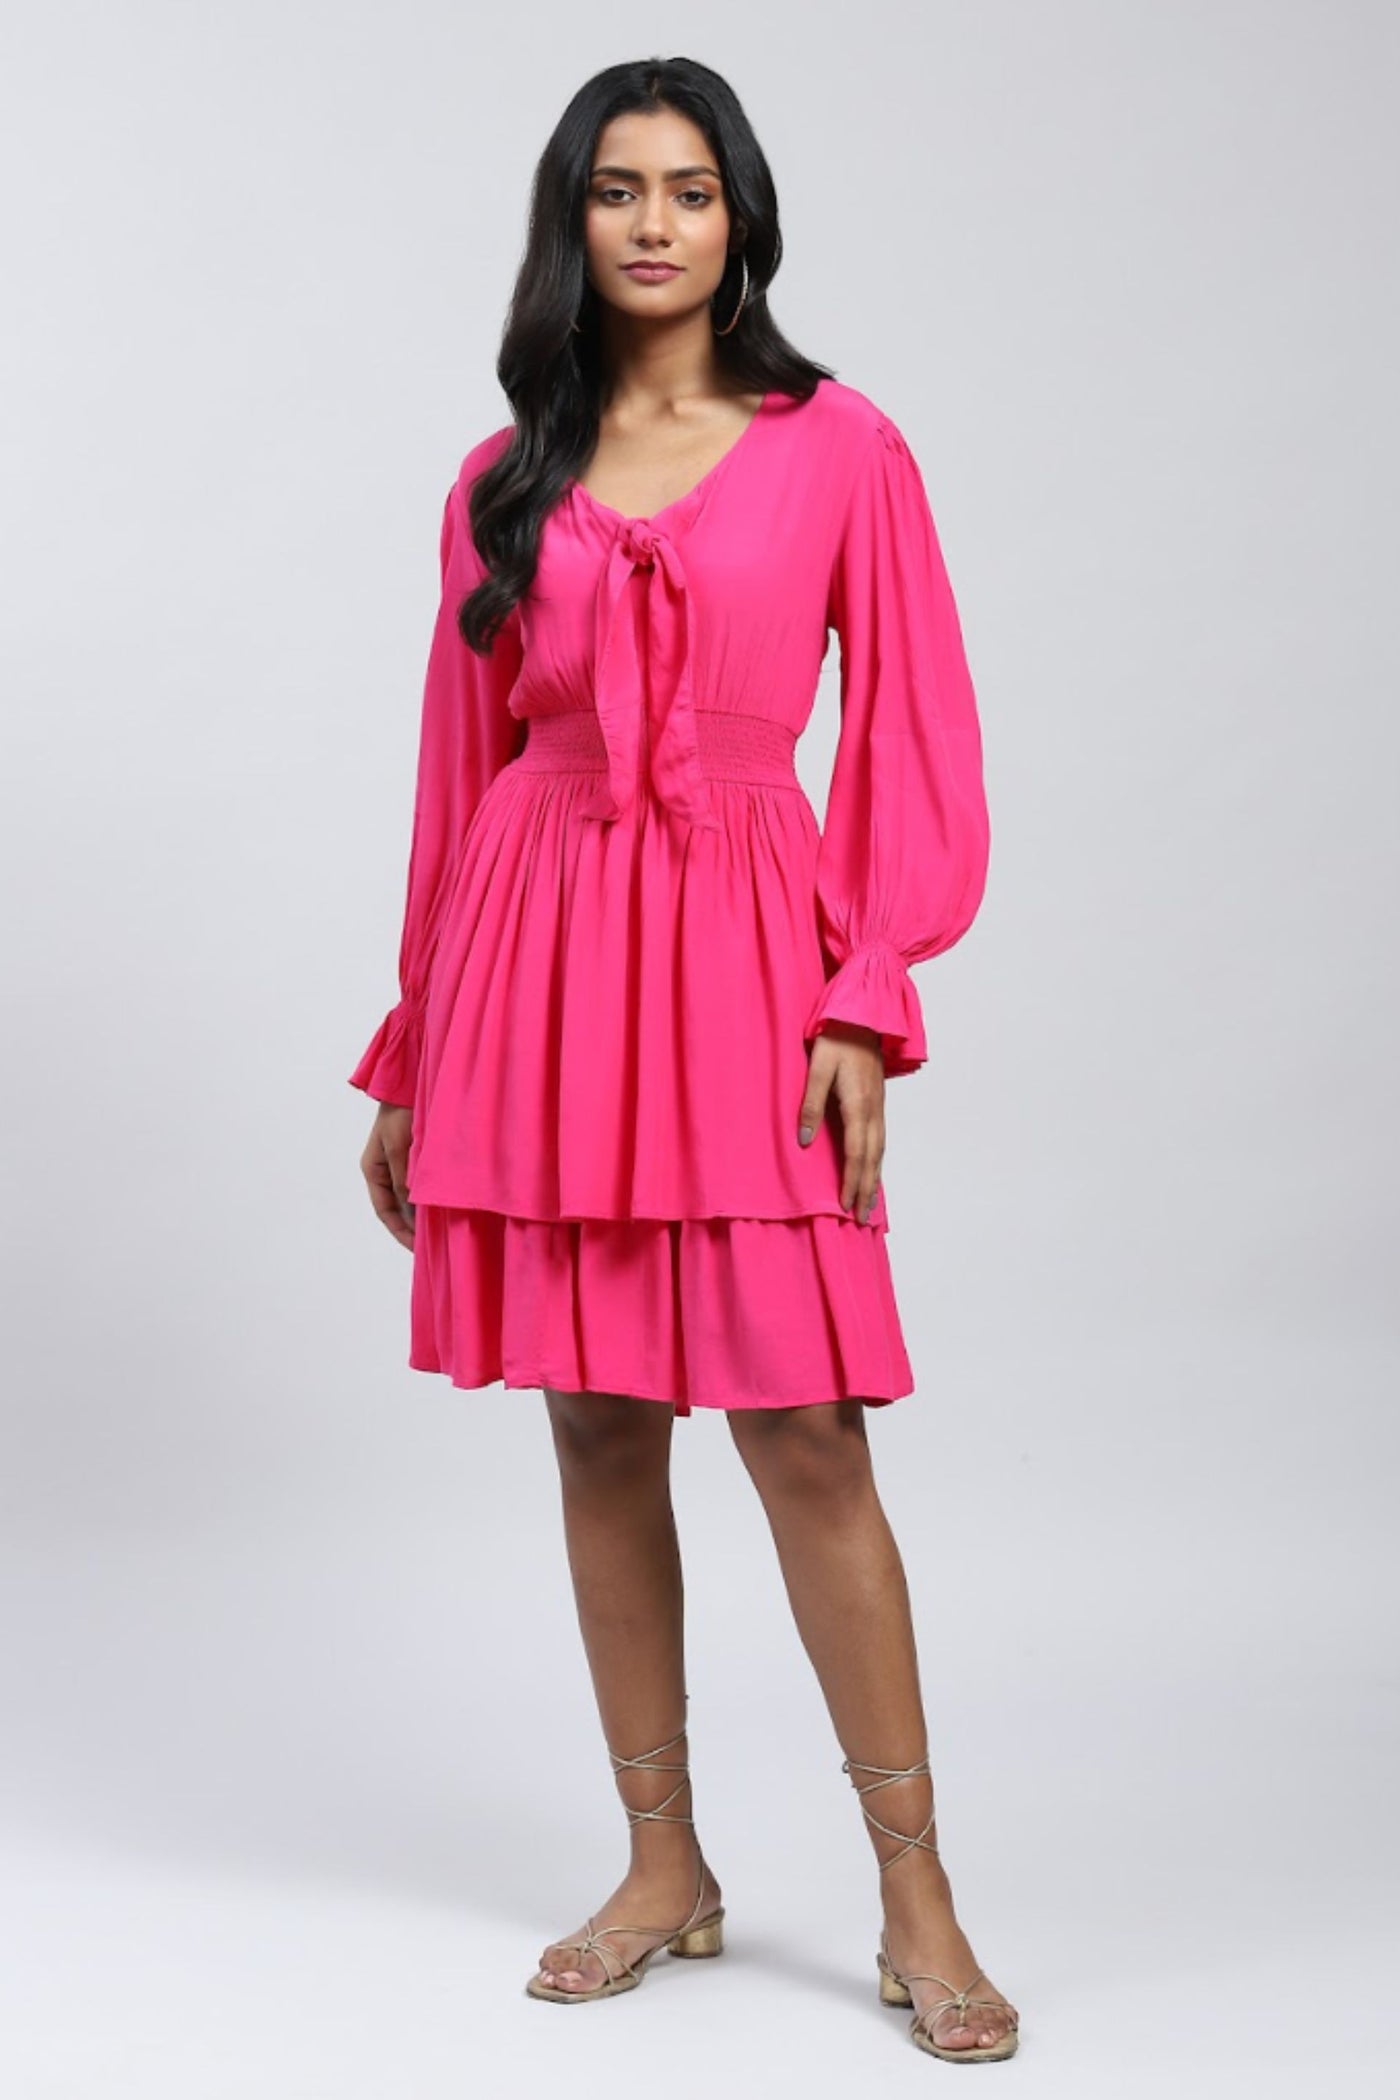 Label Ritu Kumar V Neck Full Sleeves Solid Short Dress designer wear online shopping melange singapore